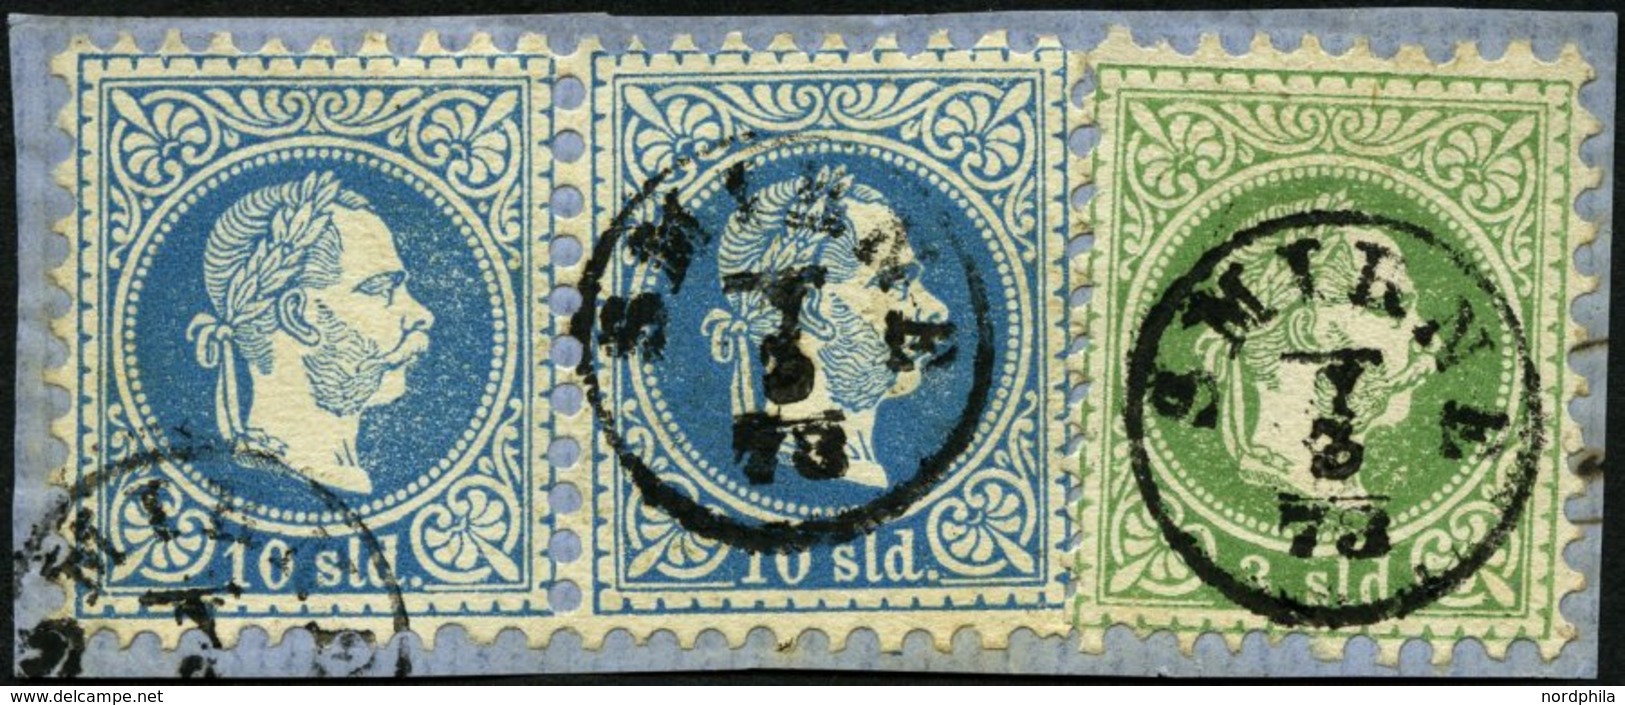 POST IN DER LEVANTE 2Ia,4Ia Paar BrfStk, 1867, 2 So. Grün Und 10 So. Blau Im Waagerechten Paar, K1 SMIRNE, Dekoratives P - Eastern Austria